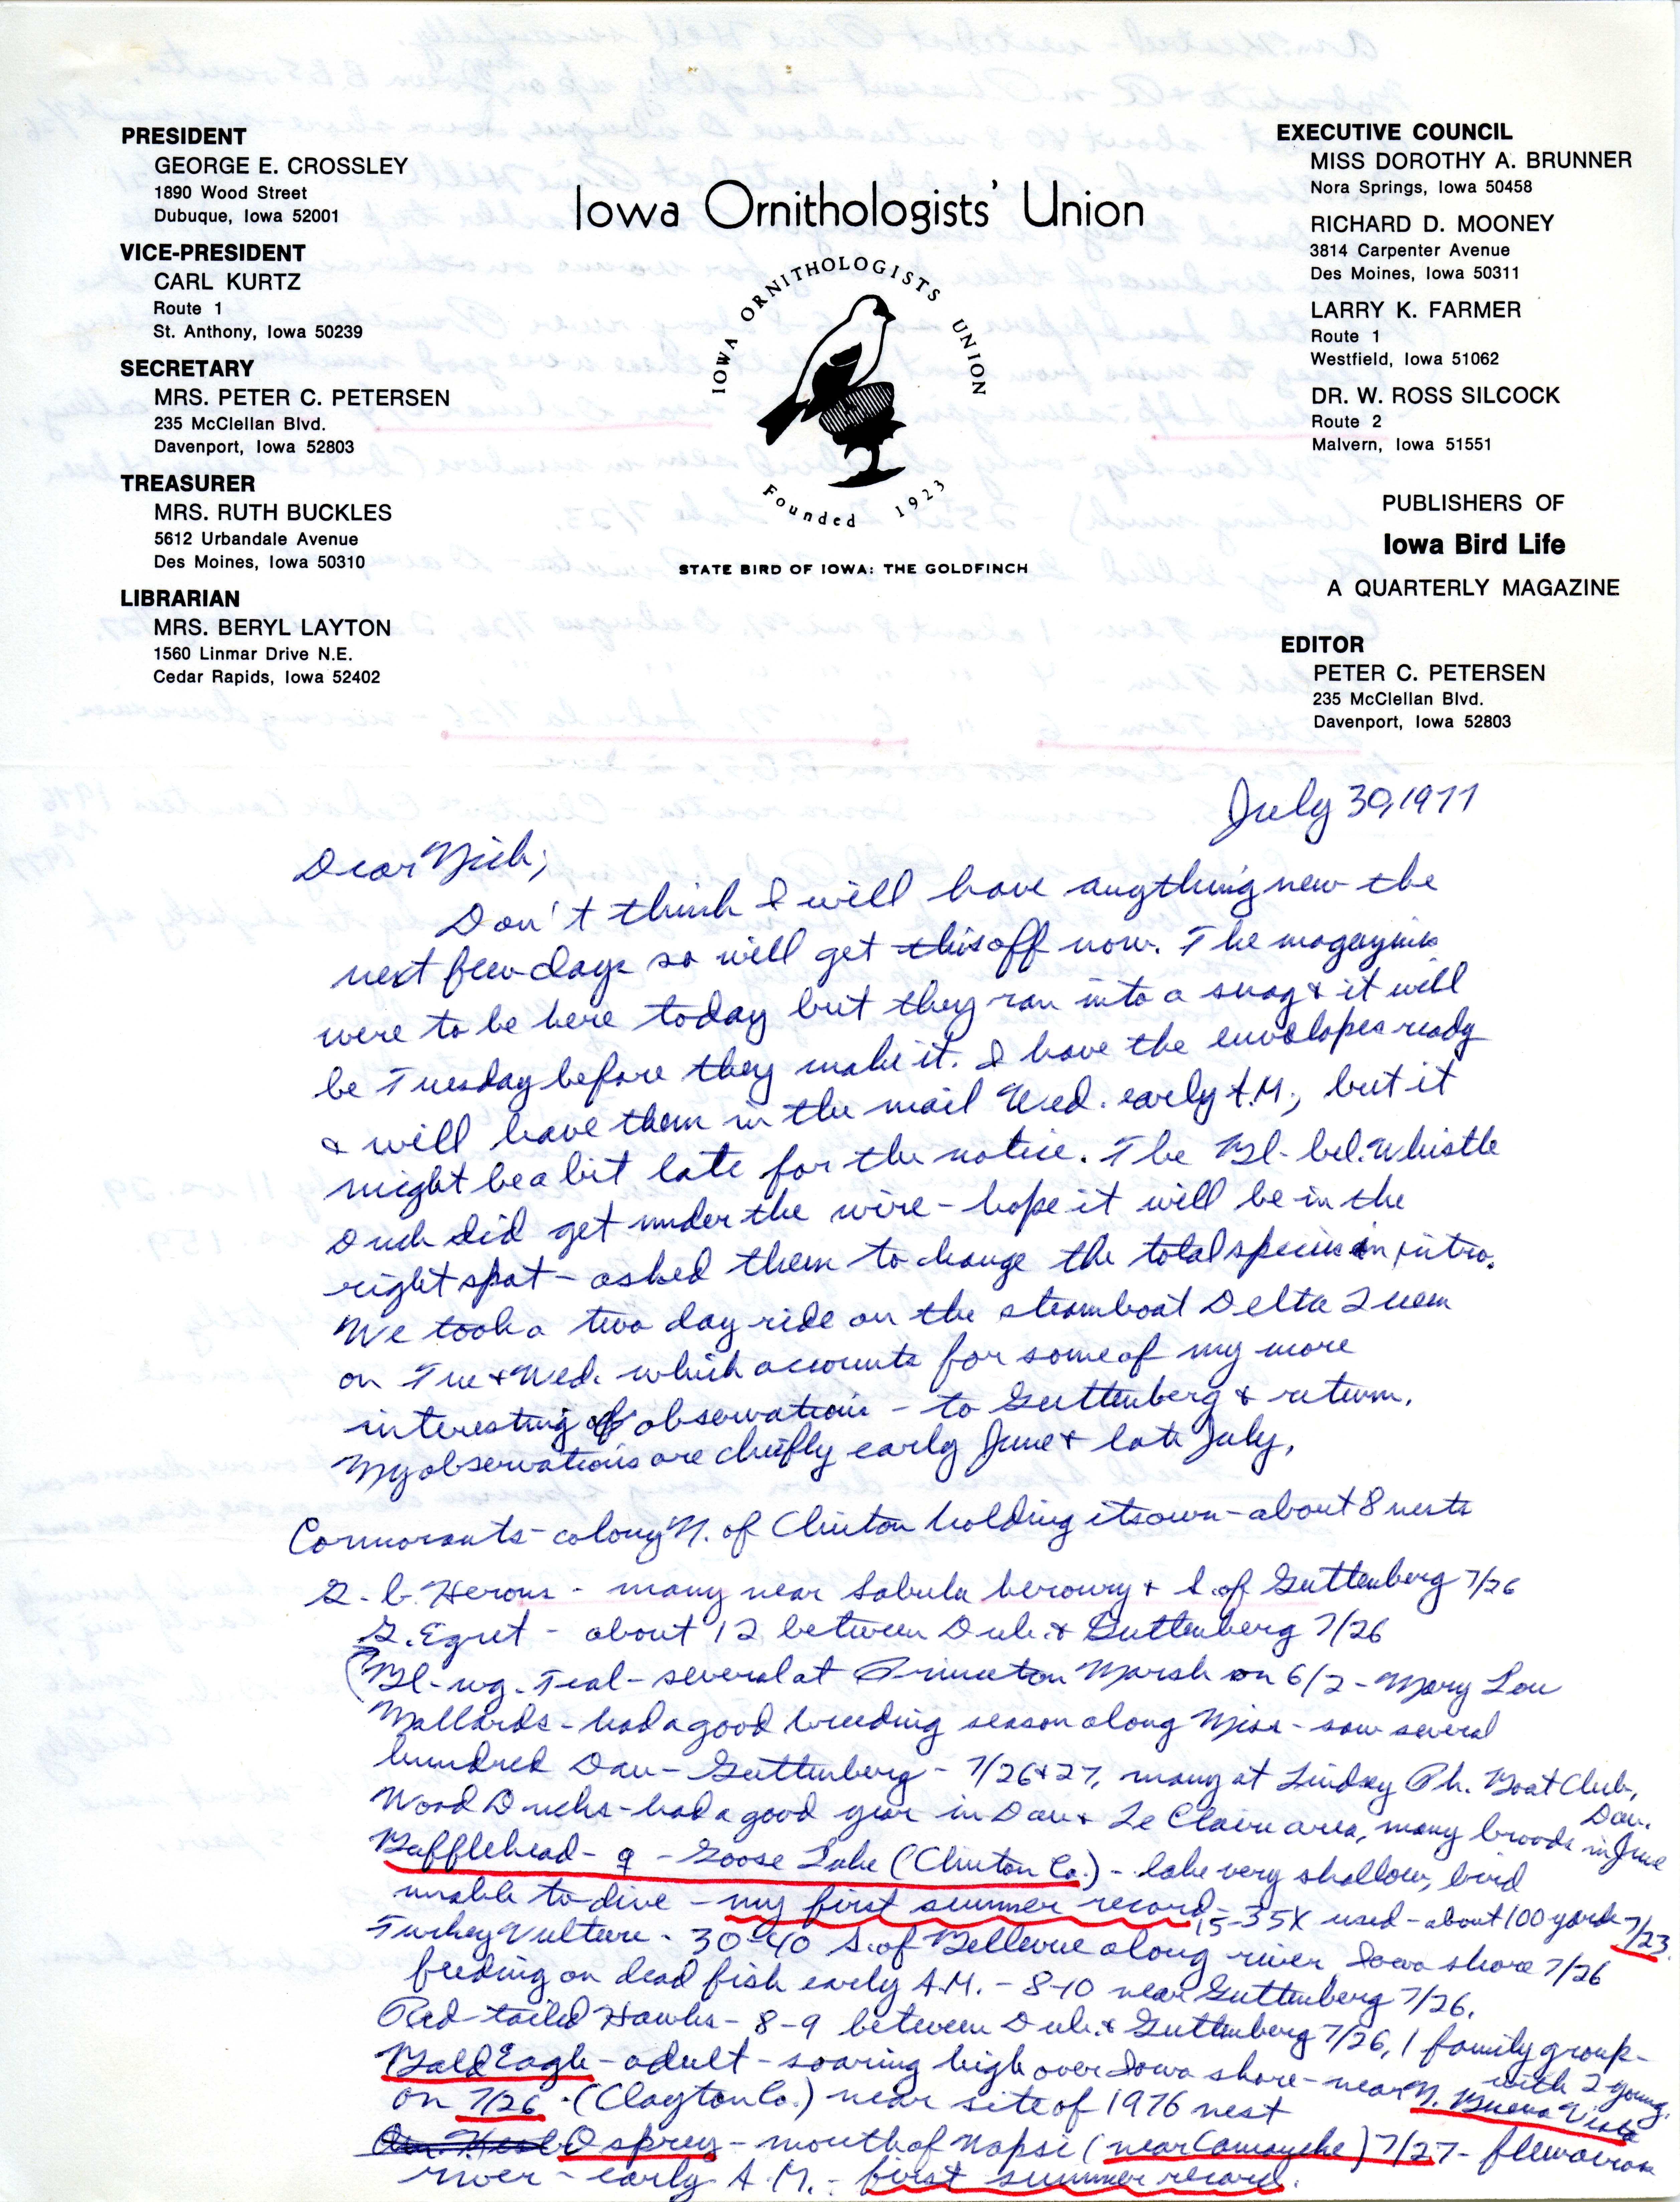 Peter C. Petersen letter to Nicholas S. Halmi, regarding bird sightings, July 30, 1977